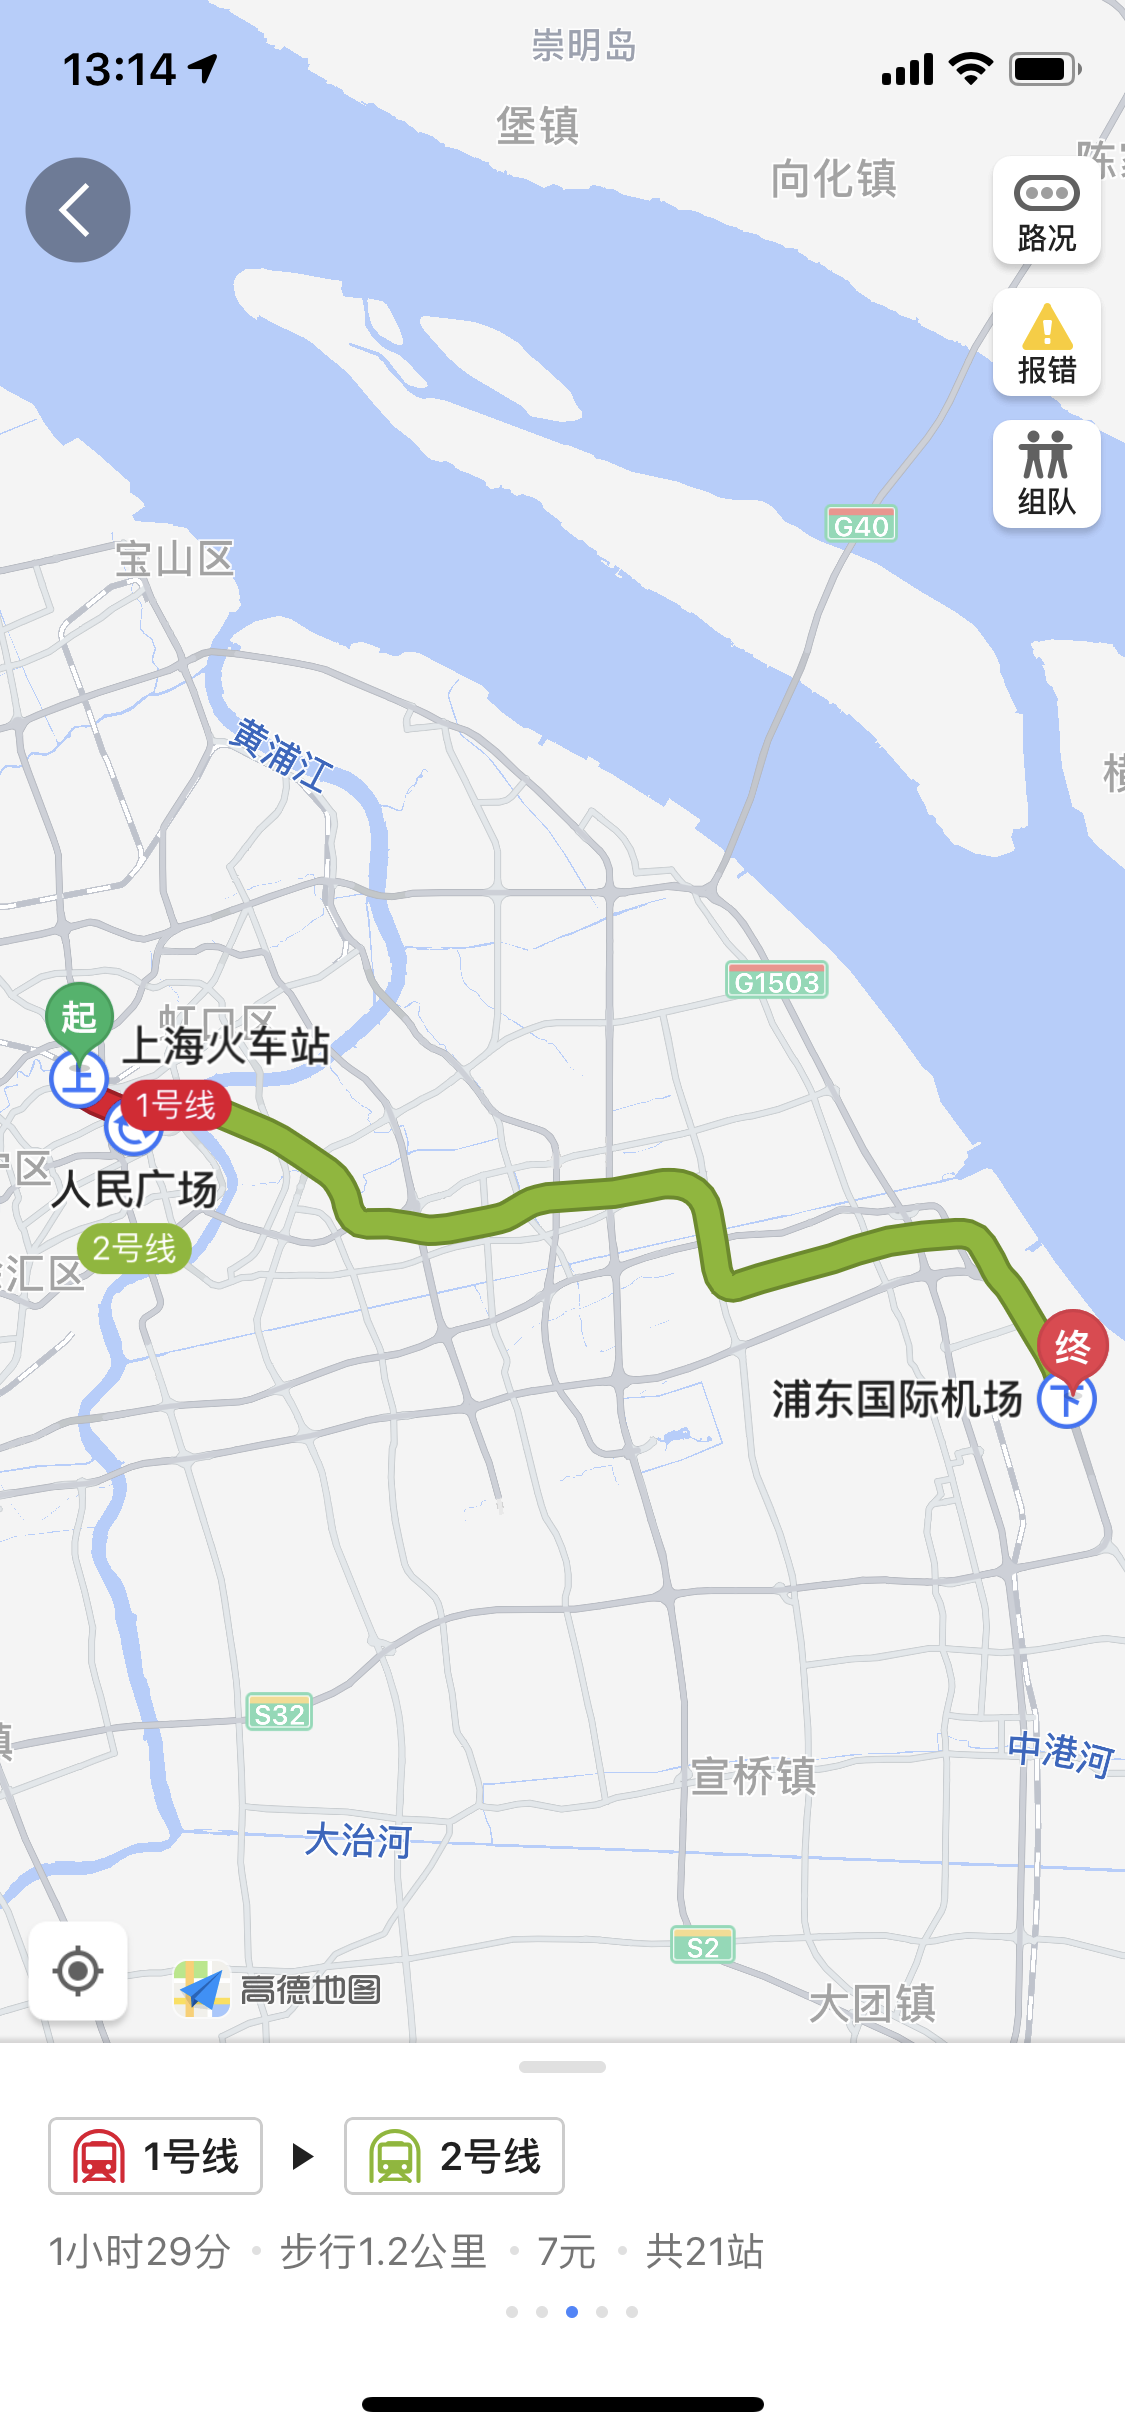 上海火车站怎么到浦东机场,大约多长时间